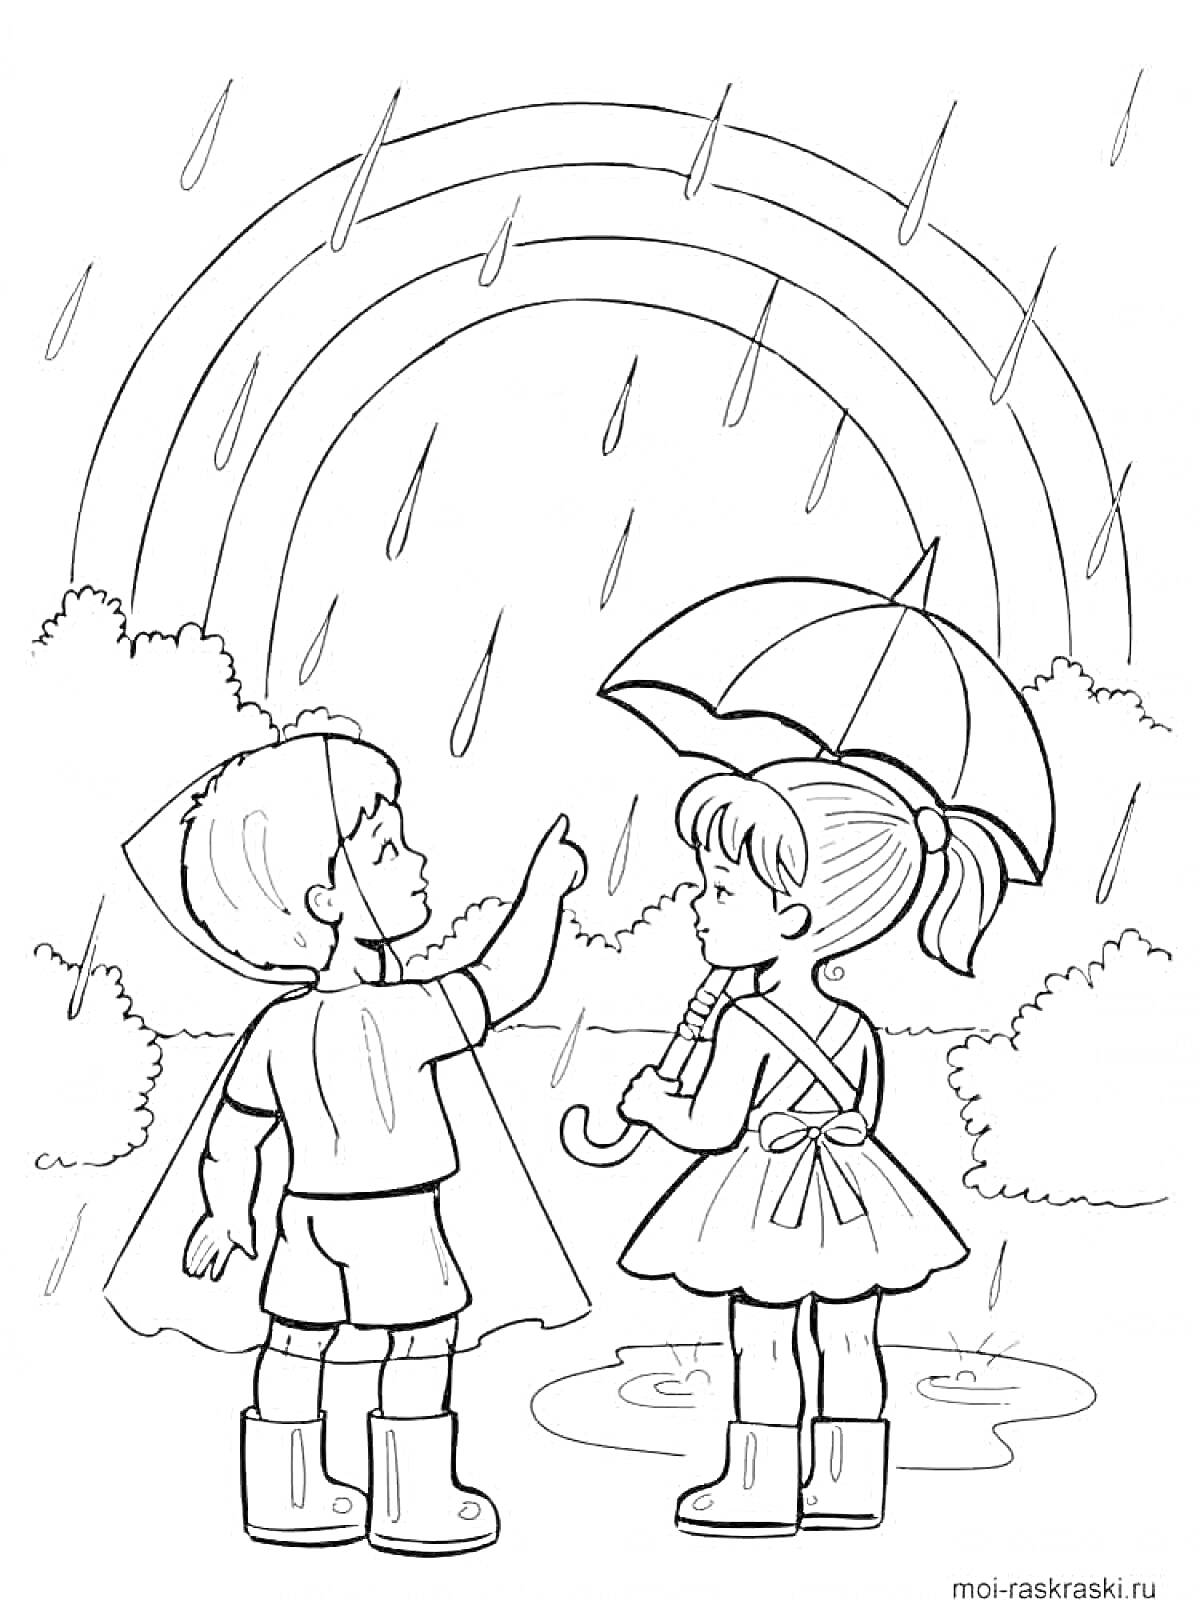 Раскраска Дети под дождём с зонтиком, радуга на небе